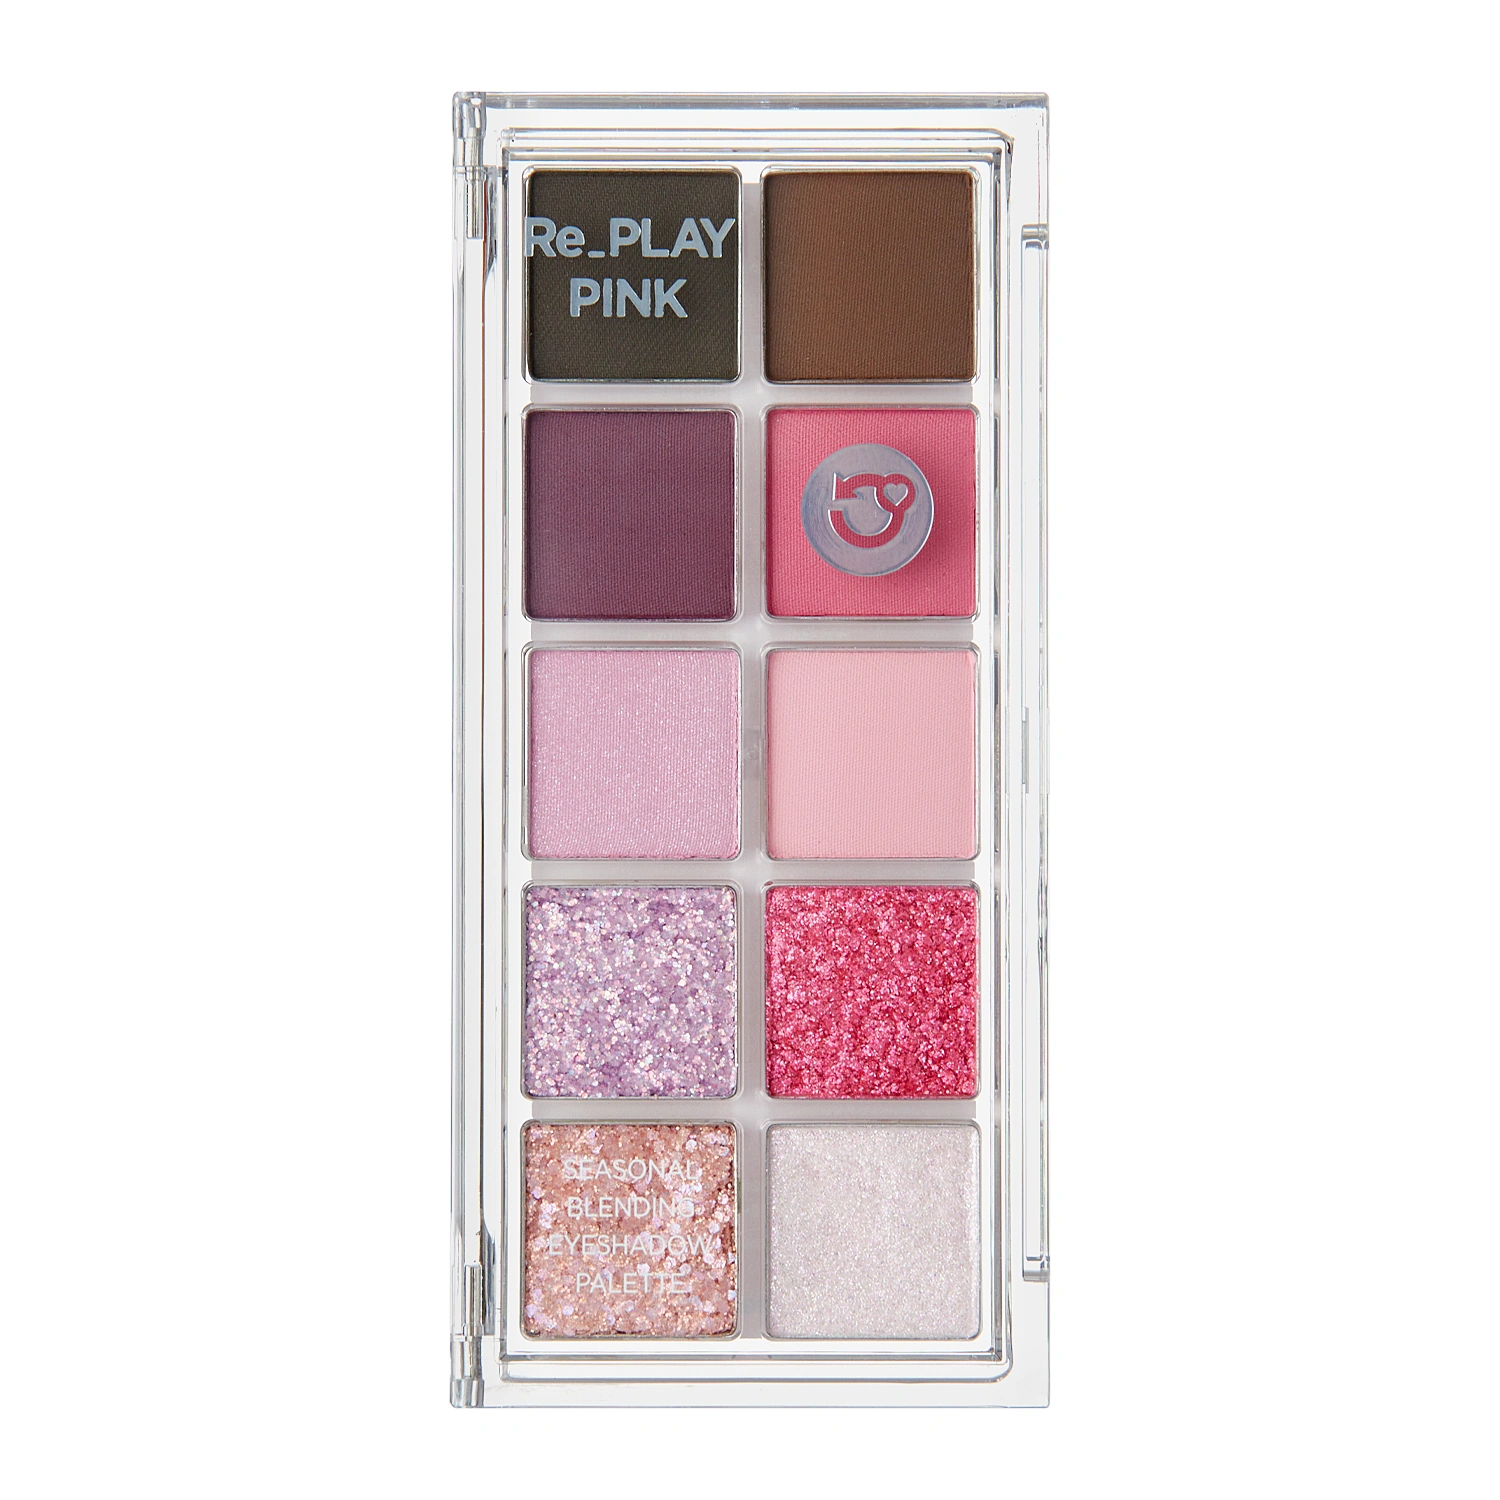 Peach C - Seasonal Blending Eyeshadow Palette - Палетка теней для век - 03 Re_Play Pink - 7,5g